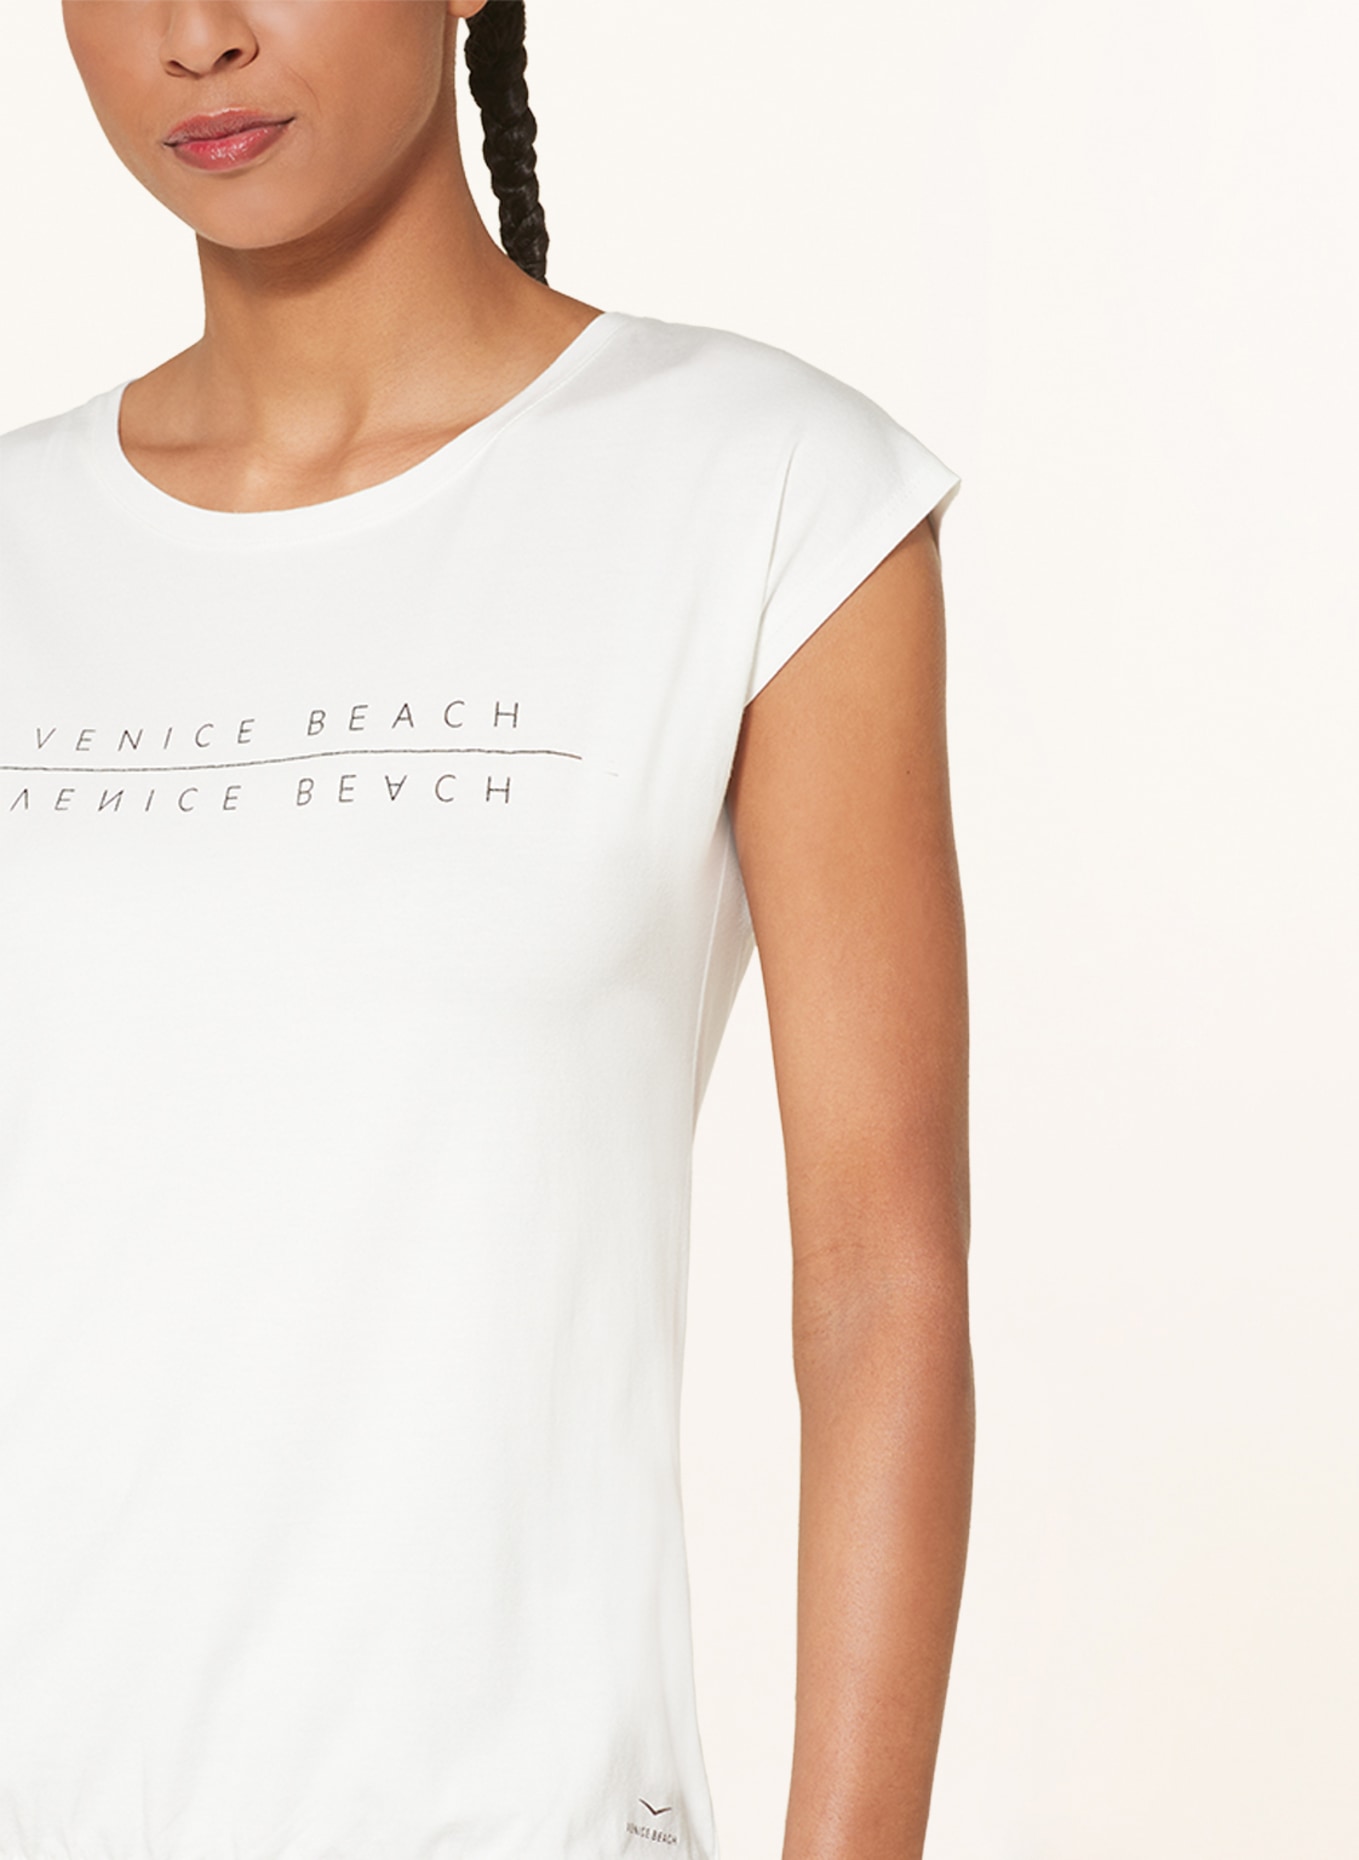 VENICE weiss T-Shirt in BEACH WONDER VB